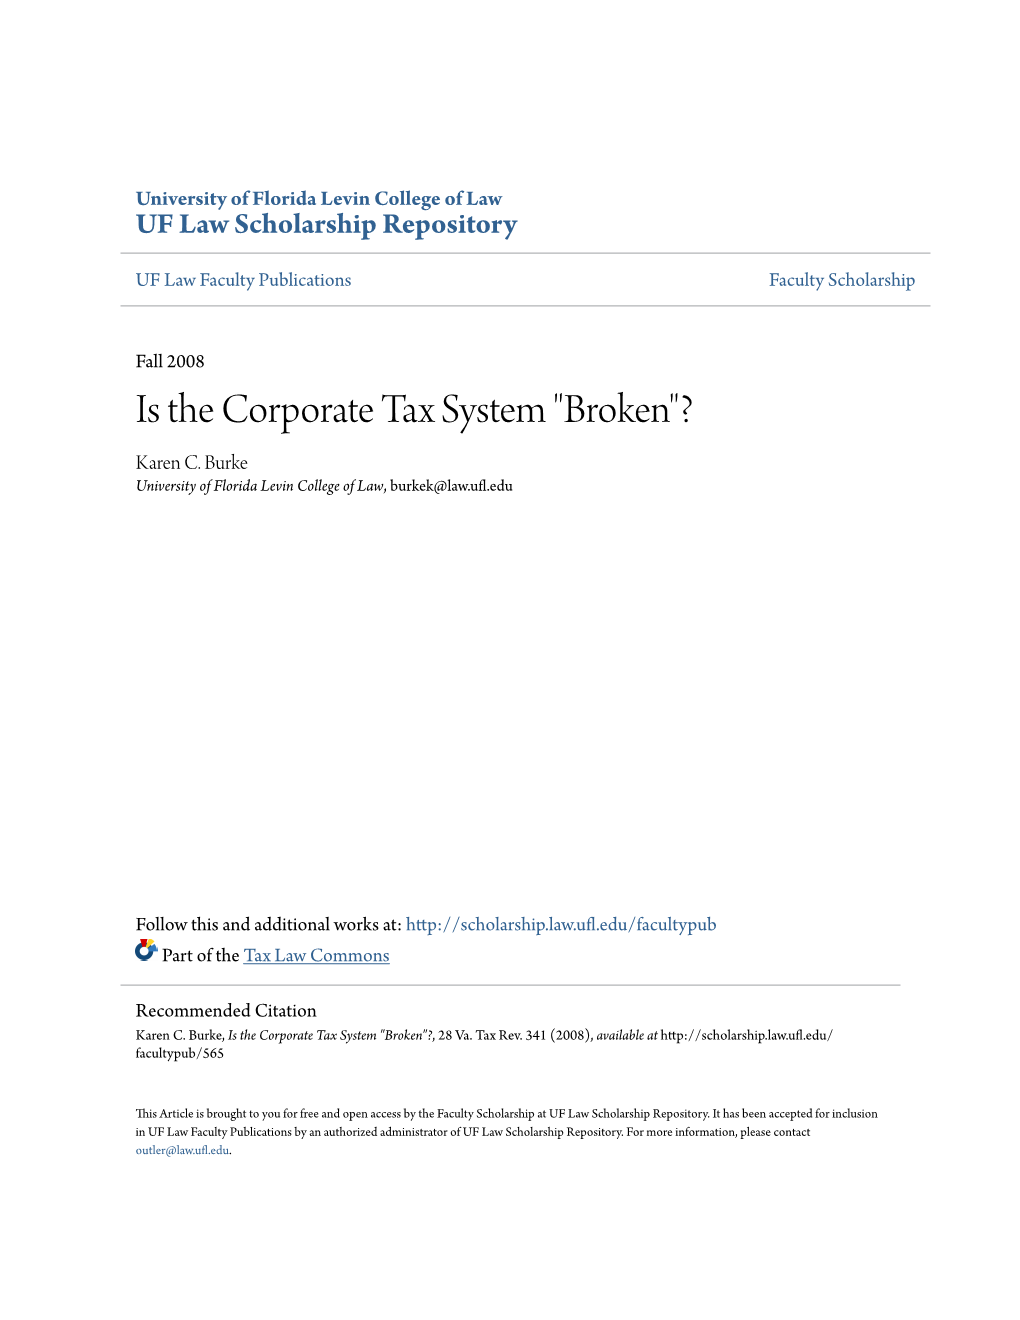 Is the Corporate Tax System "Broken"? Karen C